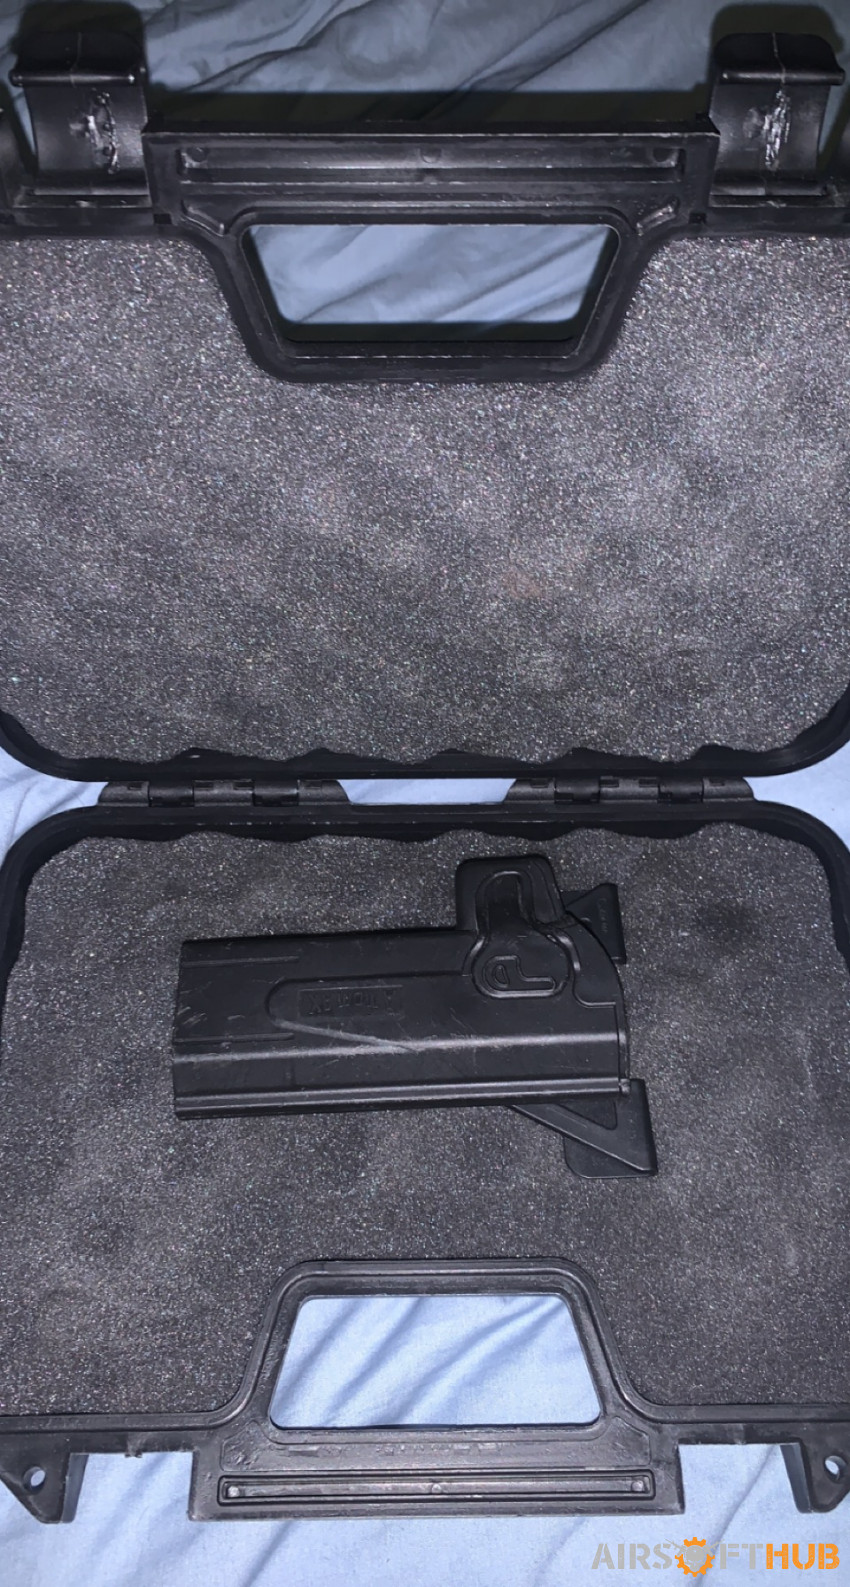 tm pistol - Used airsoft equipment